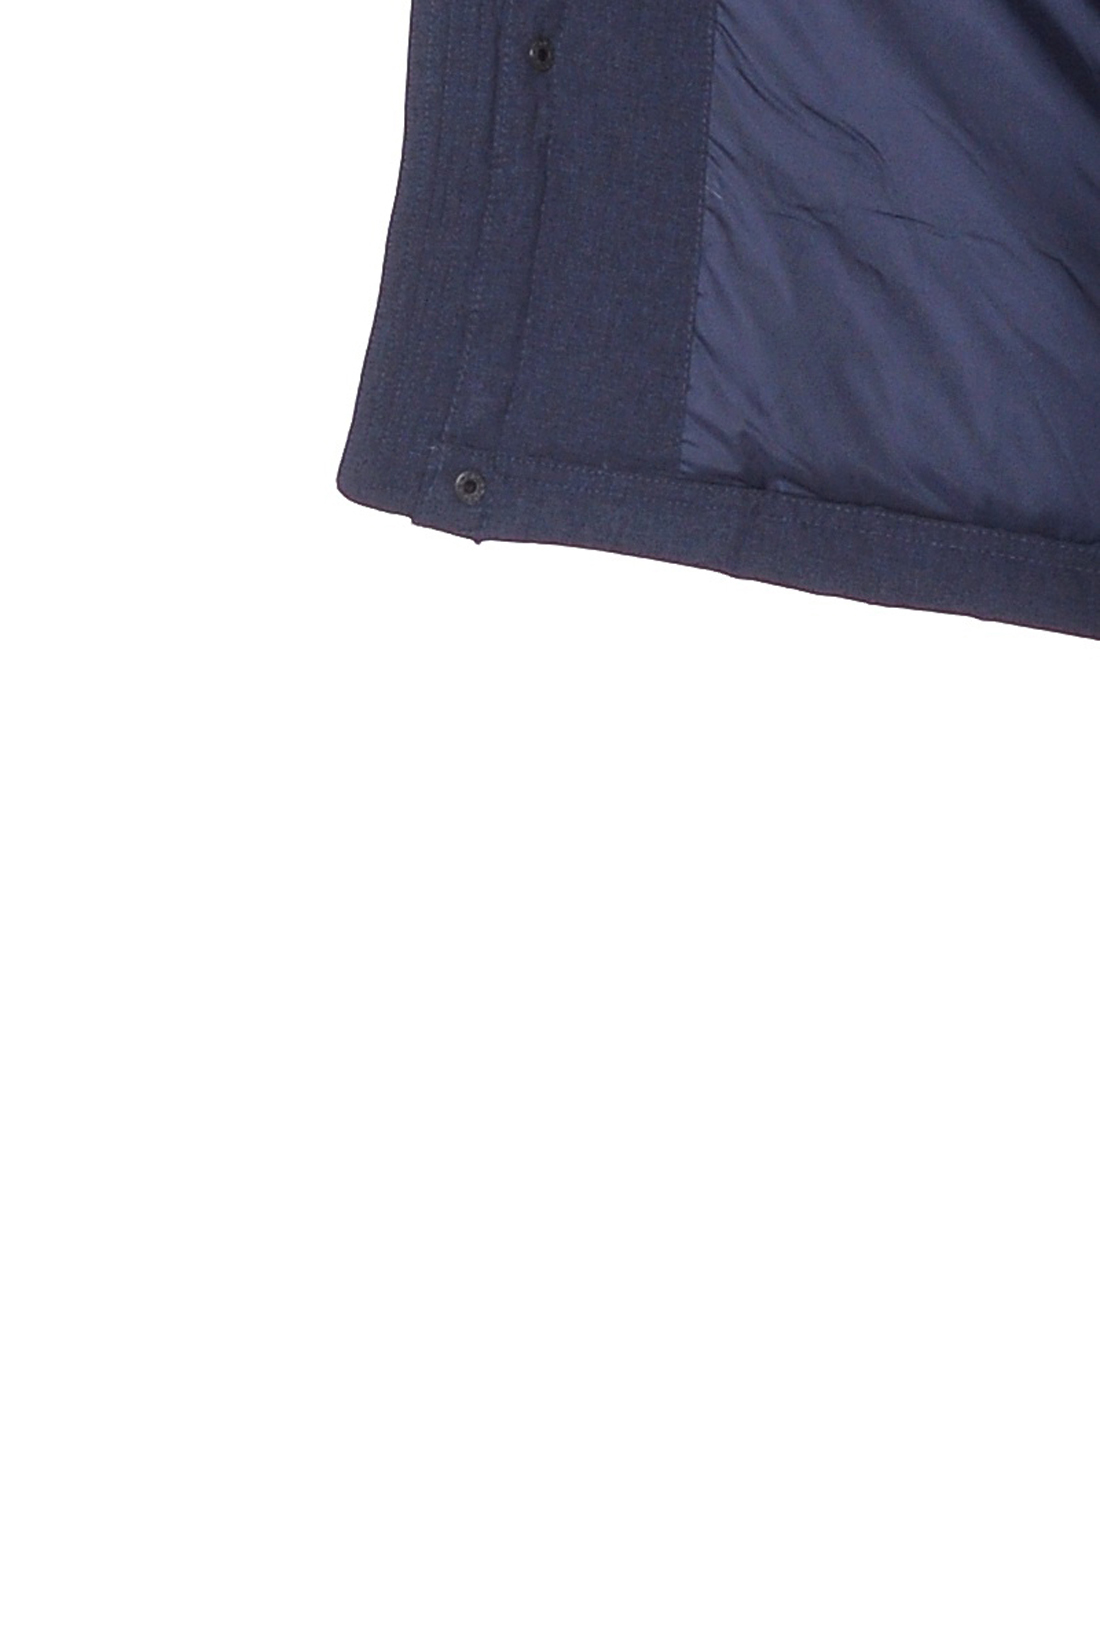 Пуховик-парка из меланжевого материала (арт. baon B508535), размер XXL, цвет синий Пуховик-парка из меланжевого материала (арт. baon B508535) - фото 4